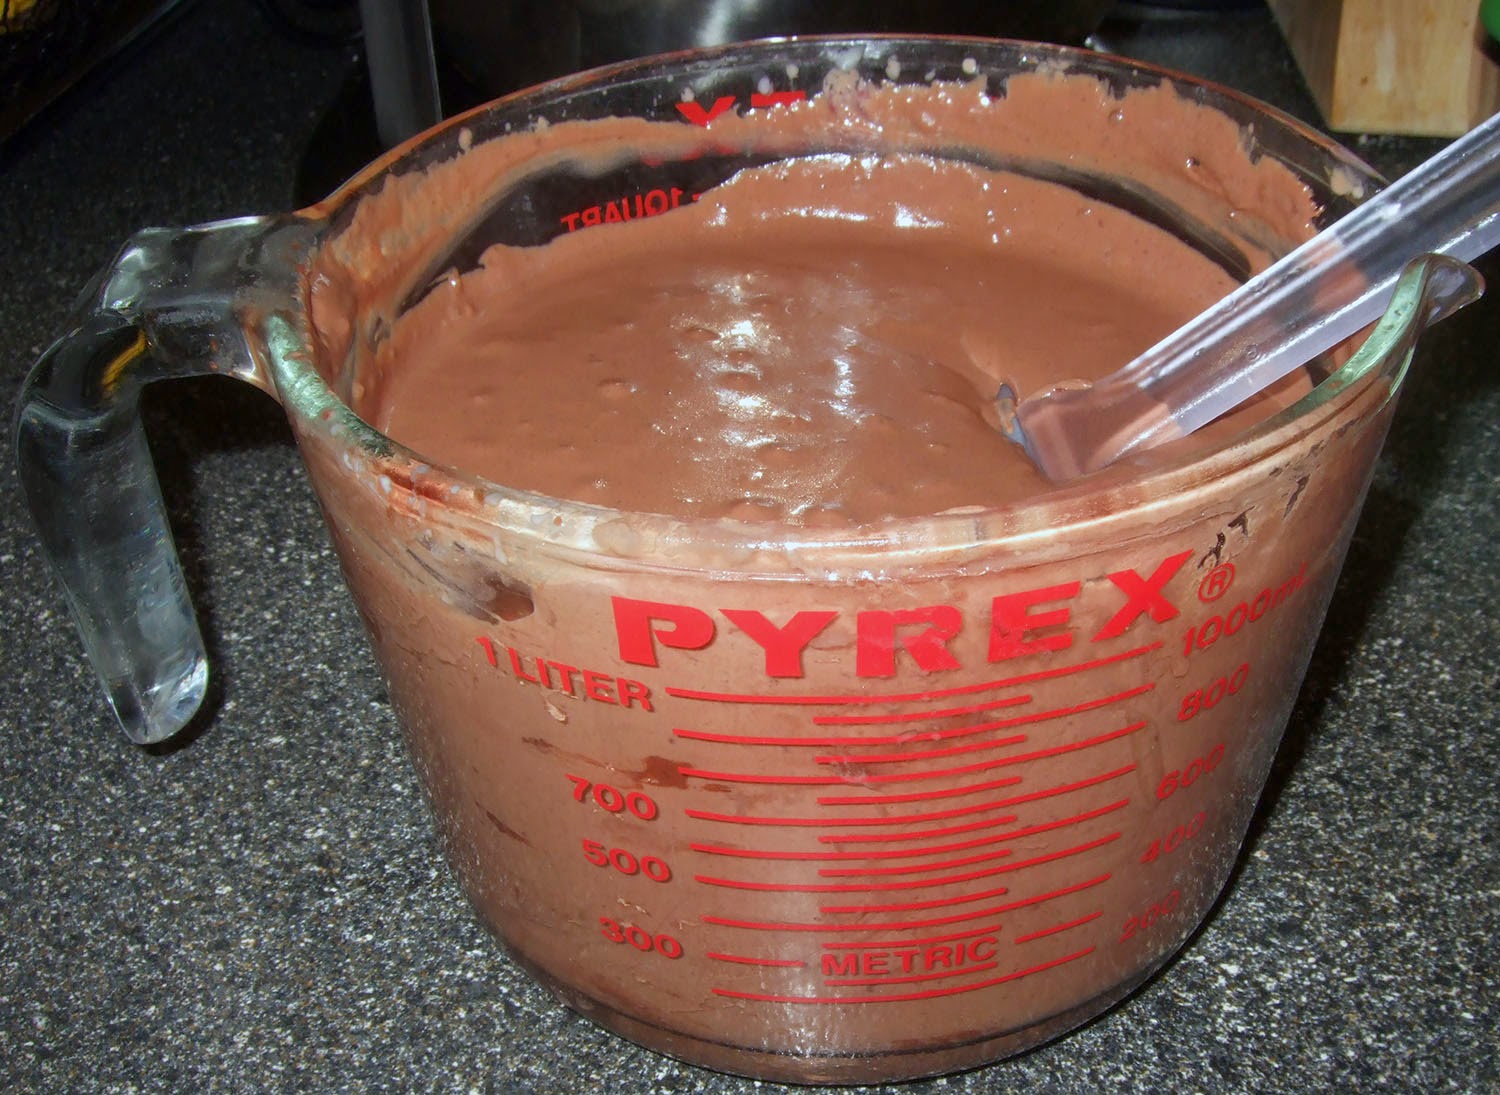 Finished chocolate ice cream mix.